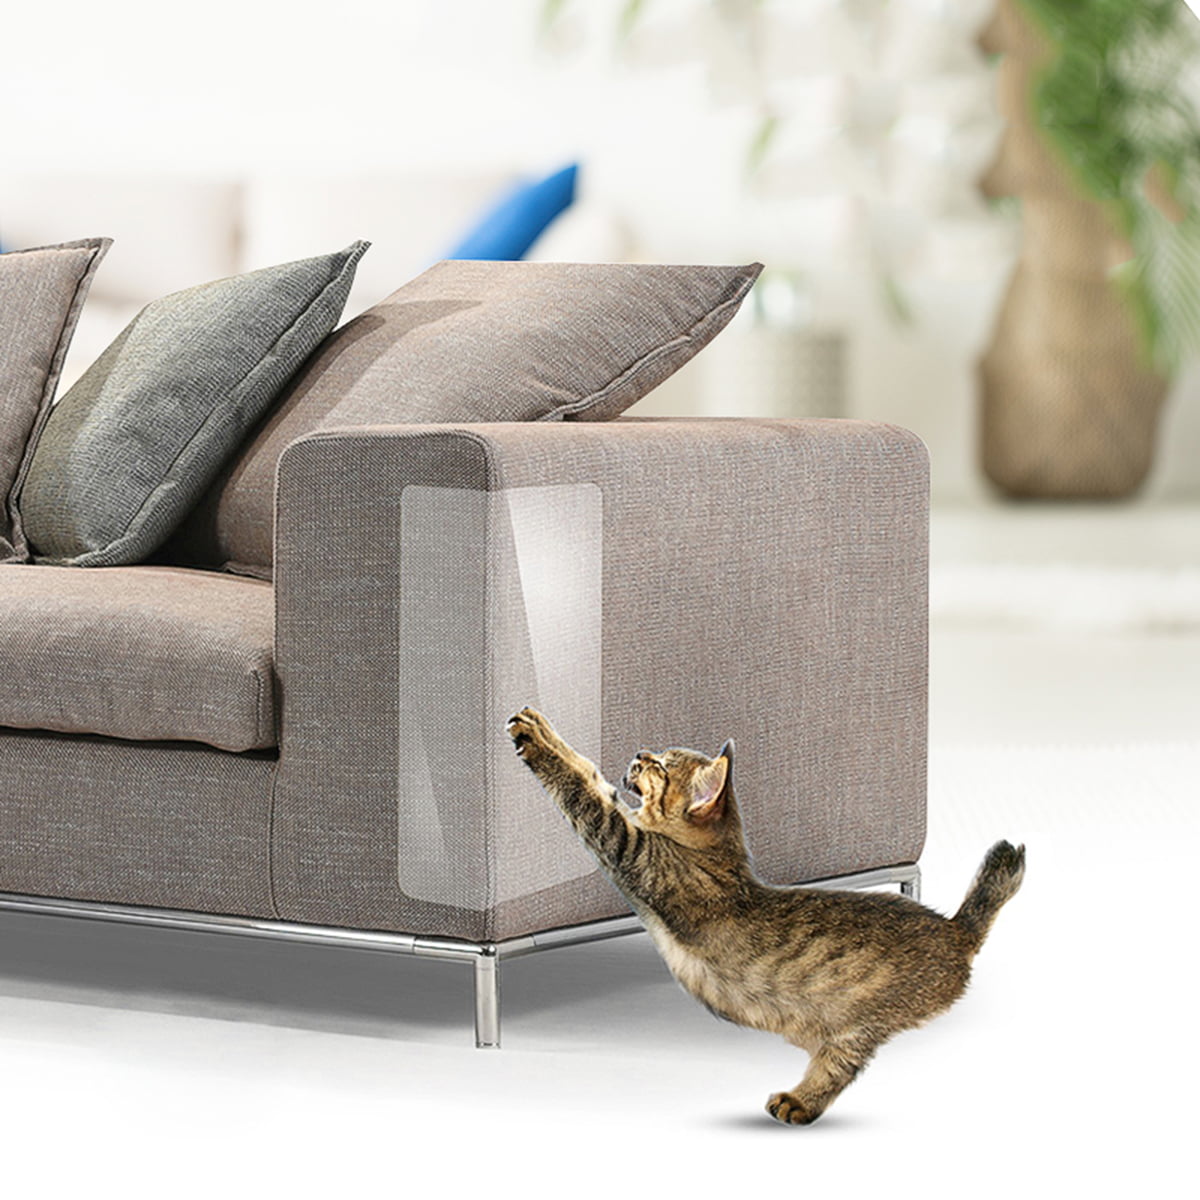 24PCS Furniture Protectors from Cats, Cat Scratch Deterrent Sheet